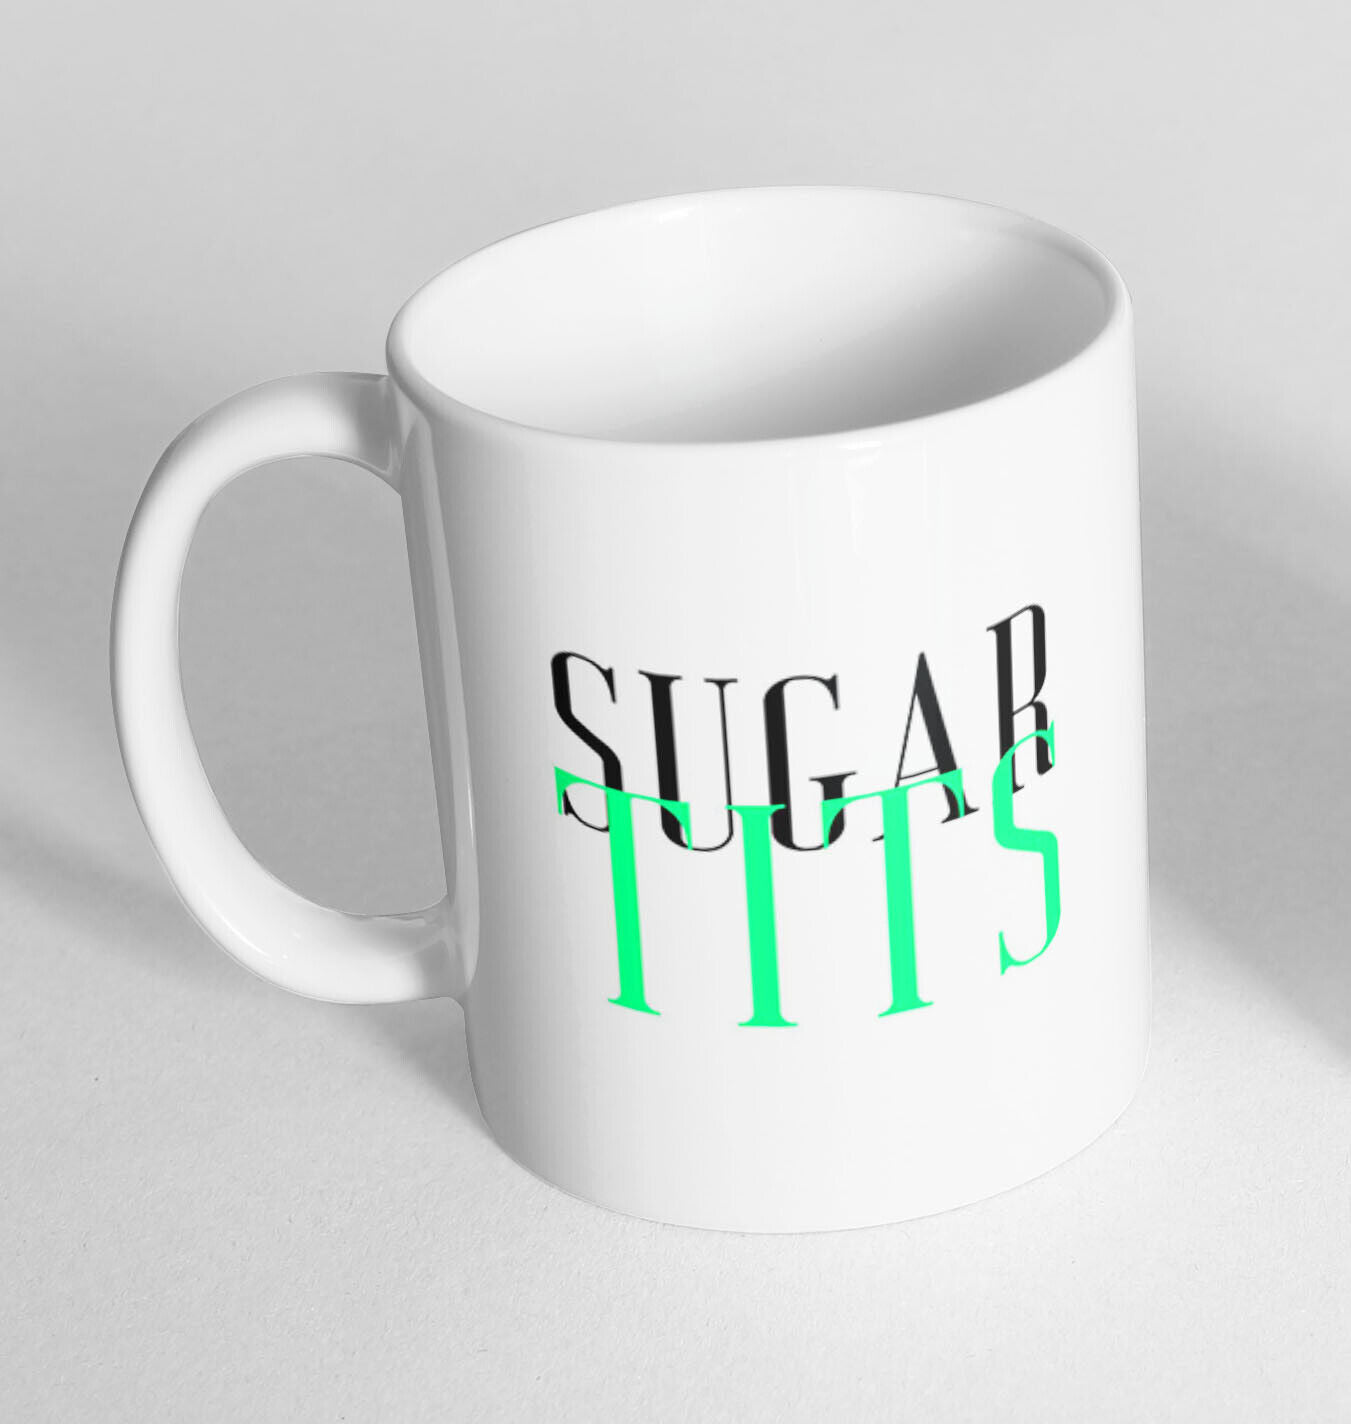 Funny Novelty Ceramic Printed Mug Thermal Mug Gift Coffee Tea 5